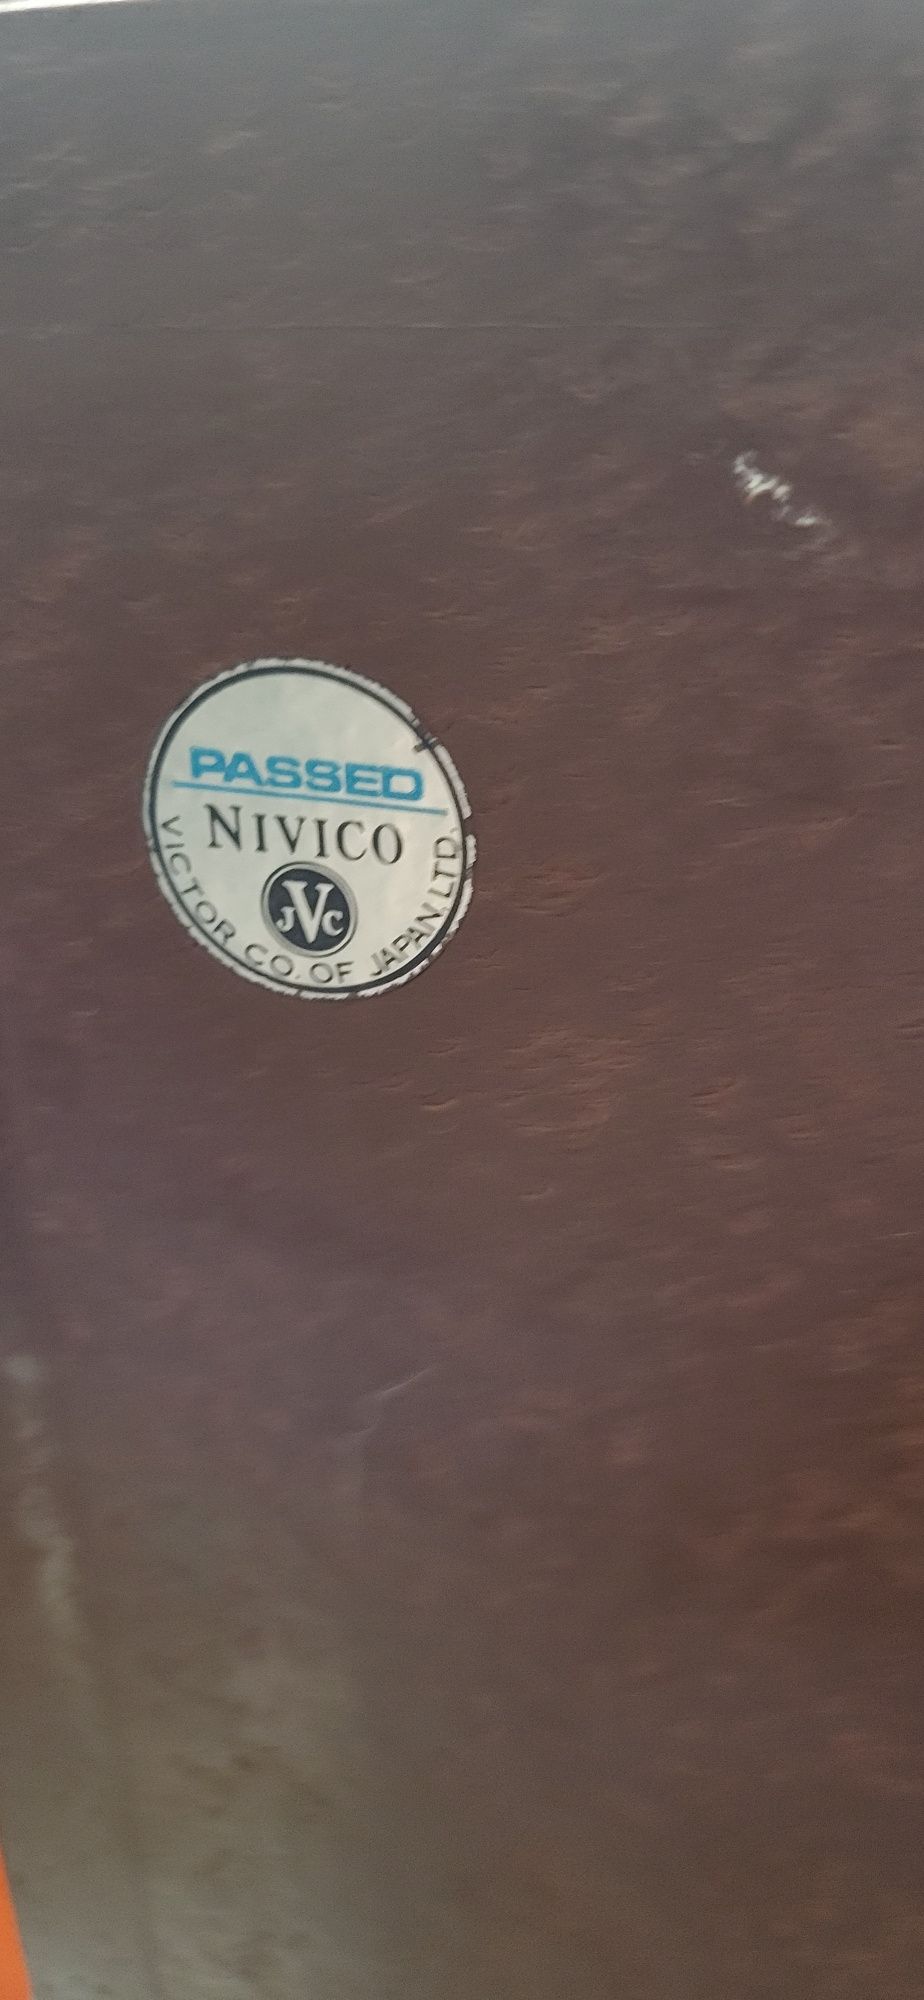 JVC Nivinco Victor 1969r idealne do lampyw kolumny glosnikowe